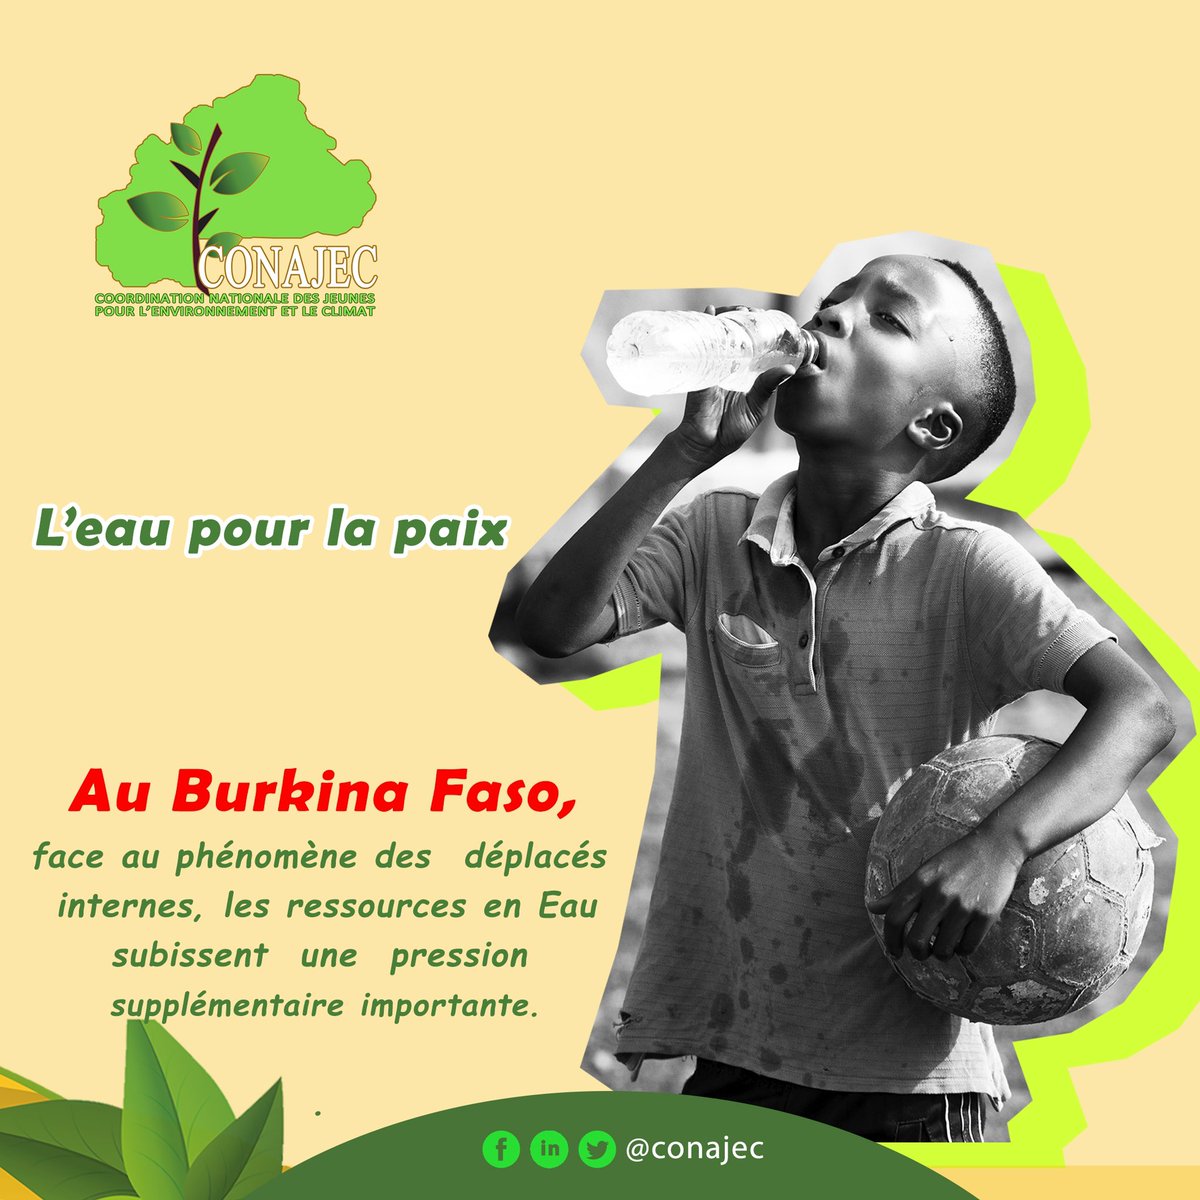 #JourneeMondialeDelEau 2024
#LeauPourlaPaix
Au Burkina Faso, face au phénomène des déplacés internes, les ressources en eau subissent une pression supplémentaire importante.